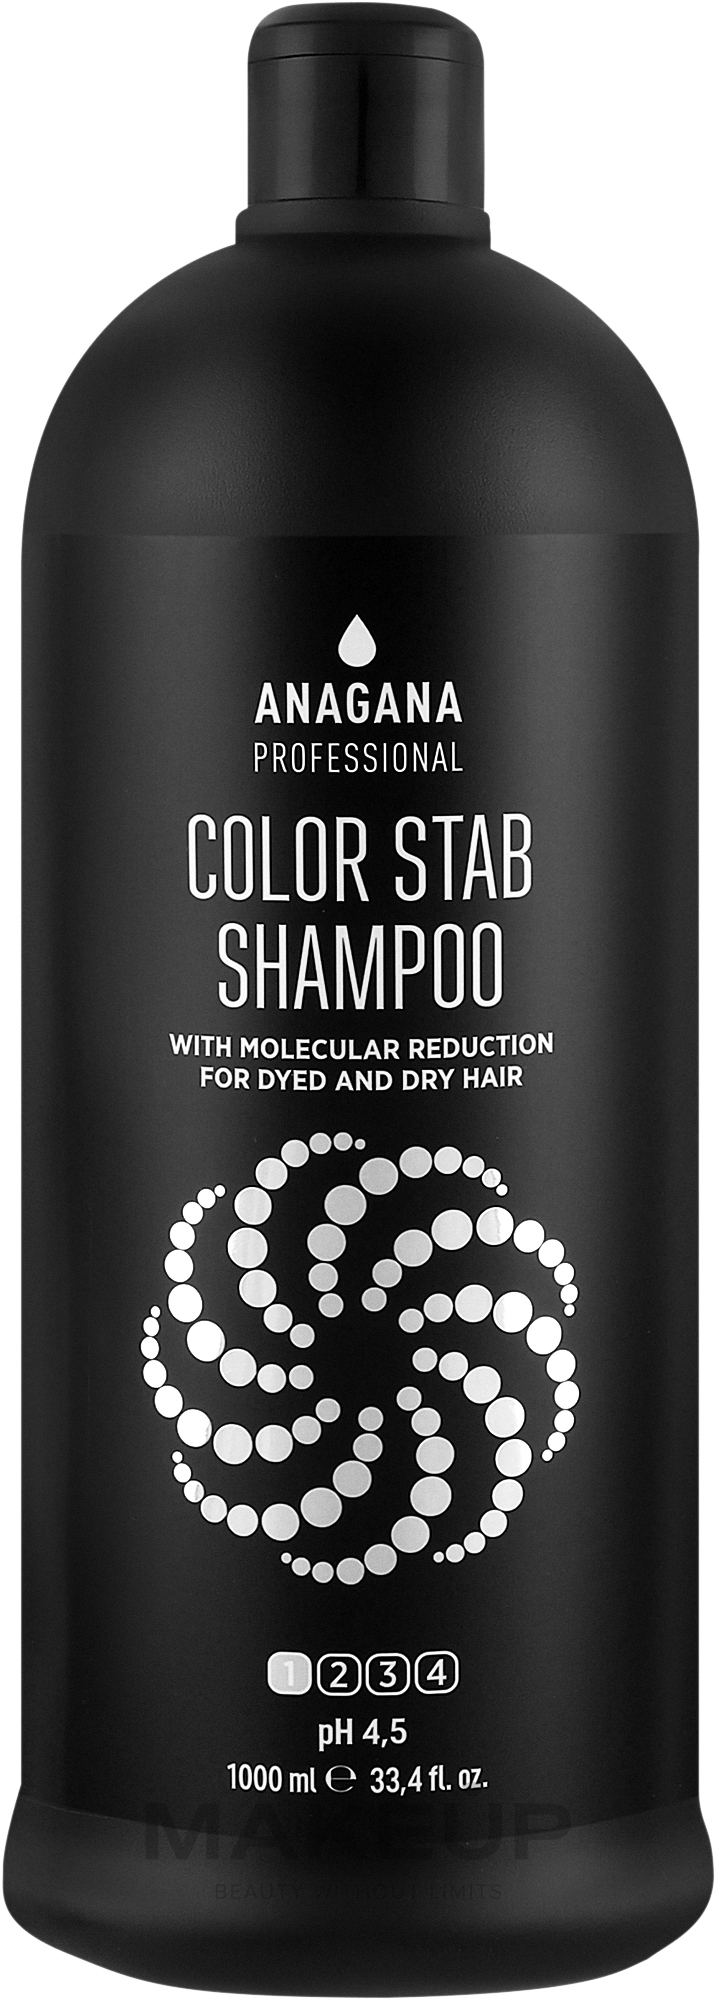 Шампунь "Стабилизатор цвета и молекулярное восстановление" для окрашенных волос - Anagana Professional Color Stab Shampoo With Molecular Reduction pH 5.5 — фото 1000ml